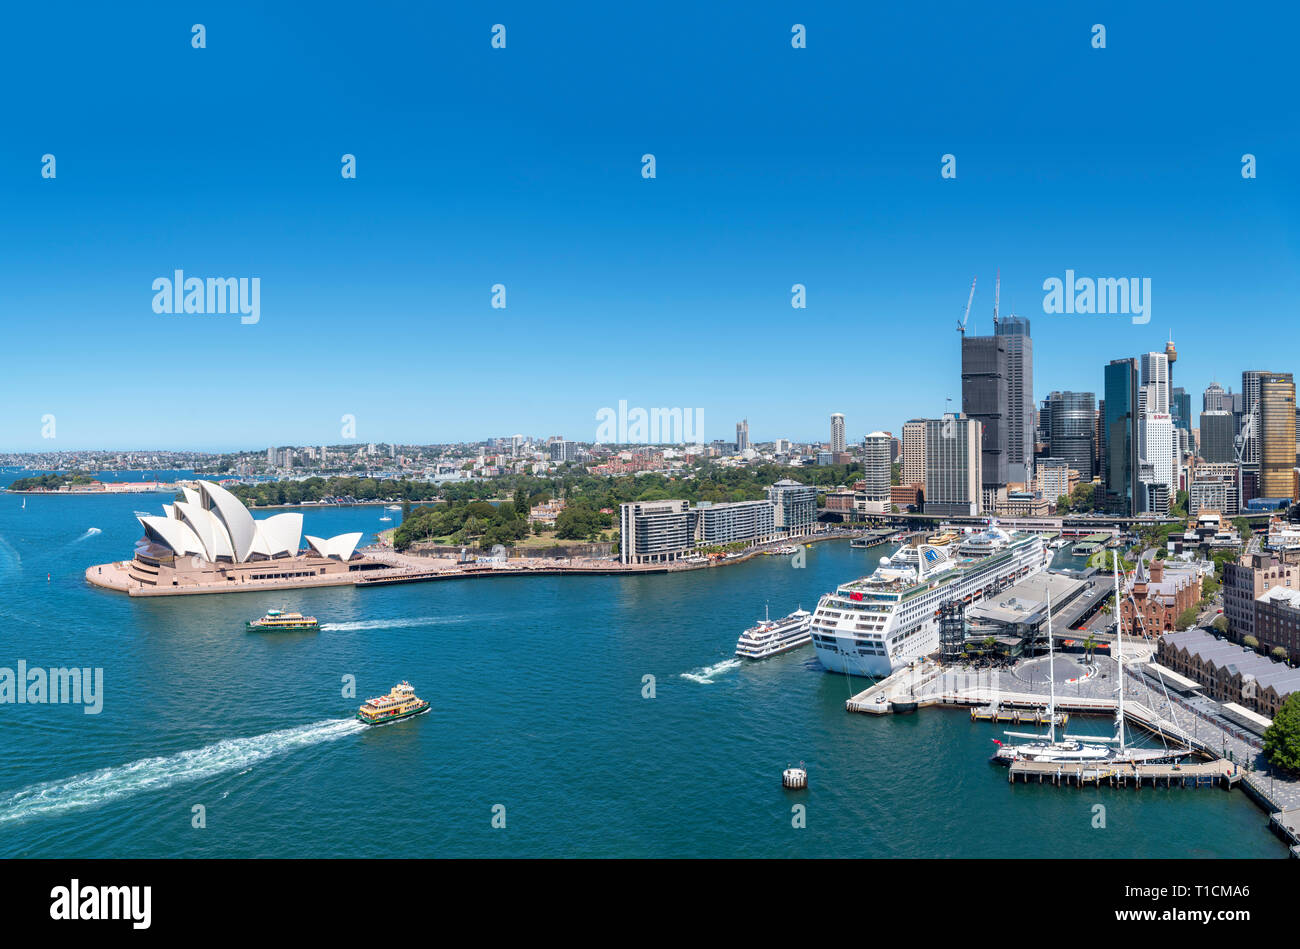 Sydney Opera House, Circular Quay y del Distrito Central de Negocios (CBD) visto desde el Puente del Puerto de Sydney, Sydney, Australia. Foto de stock